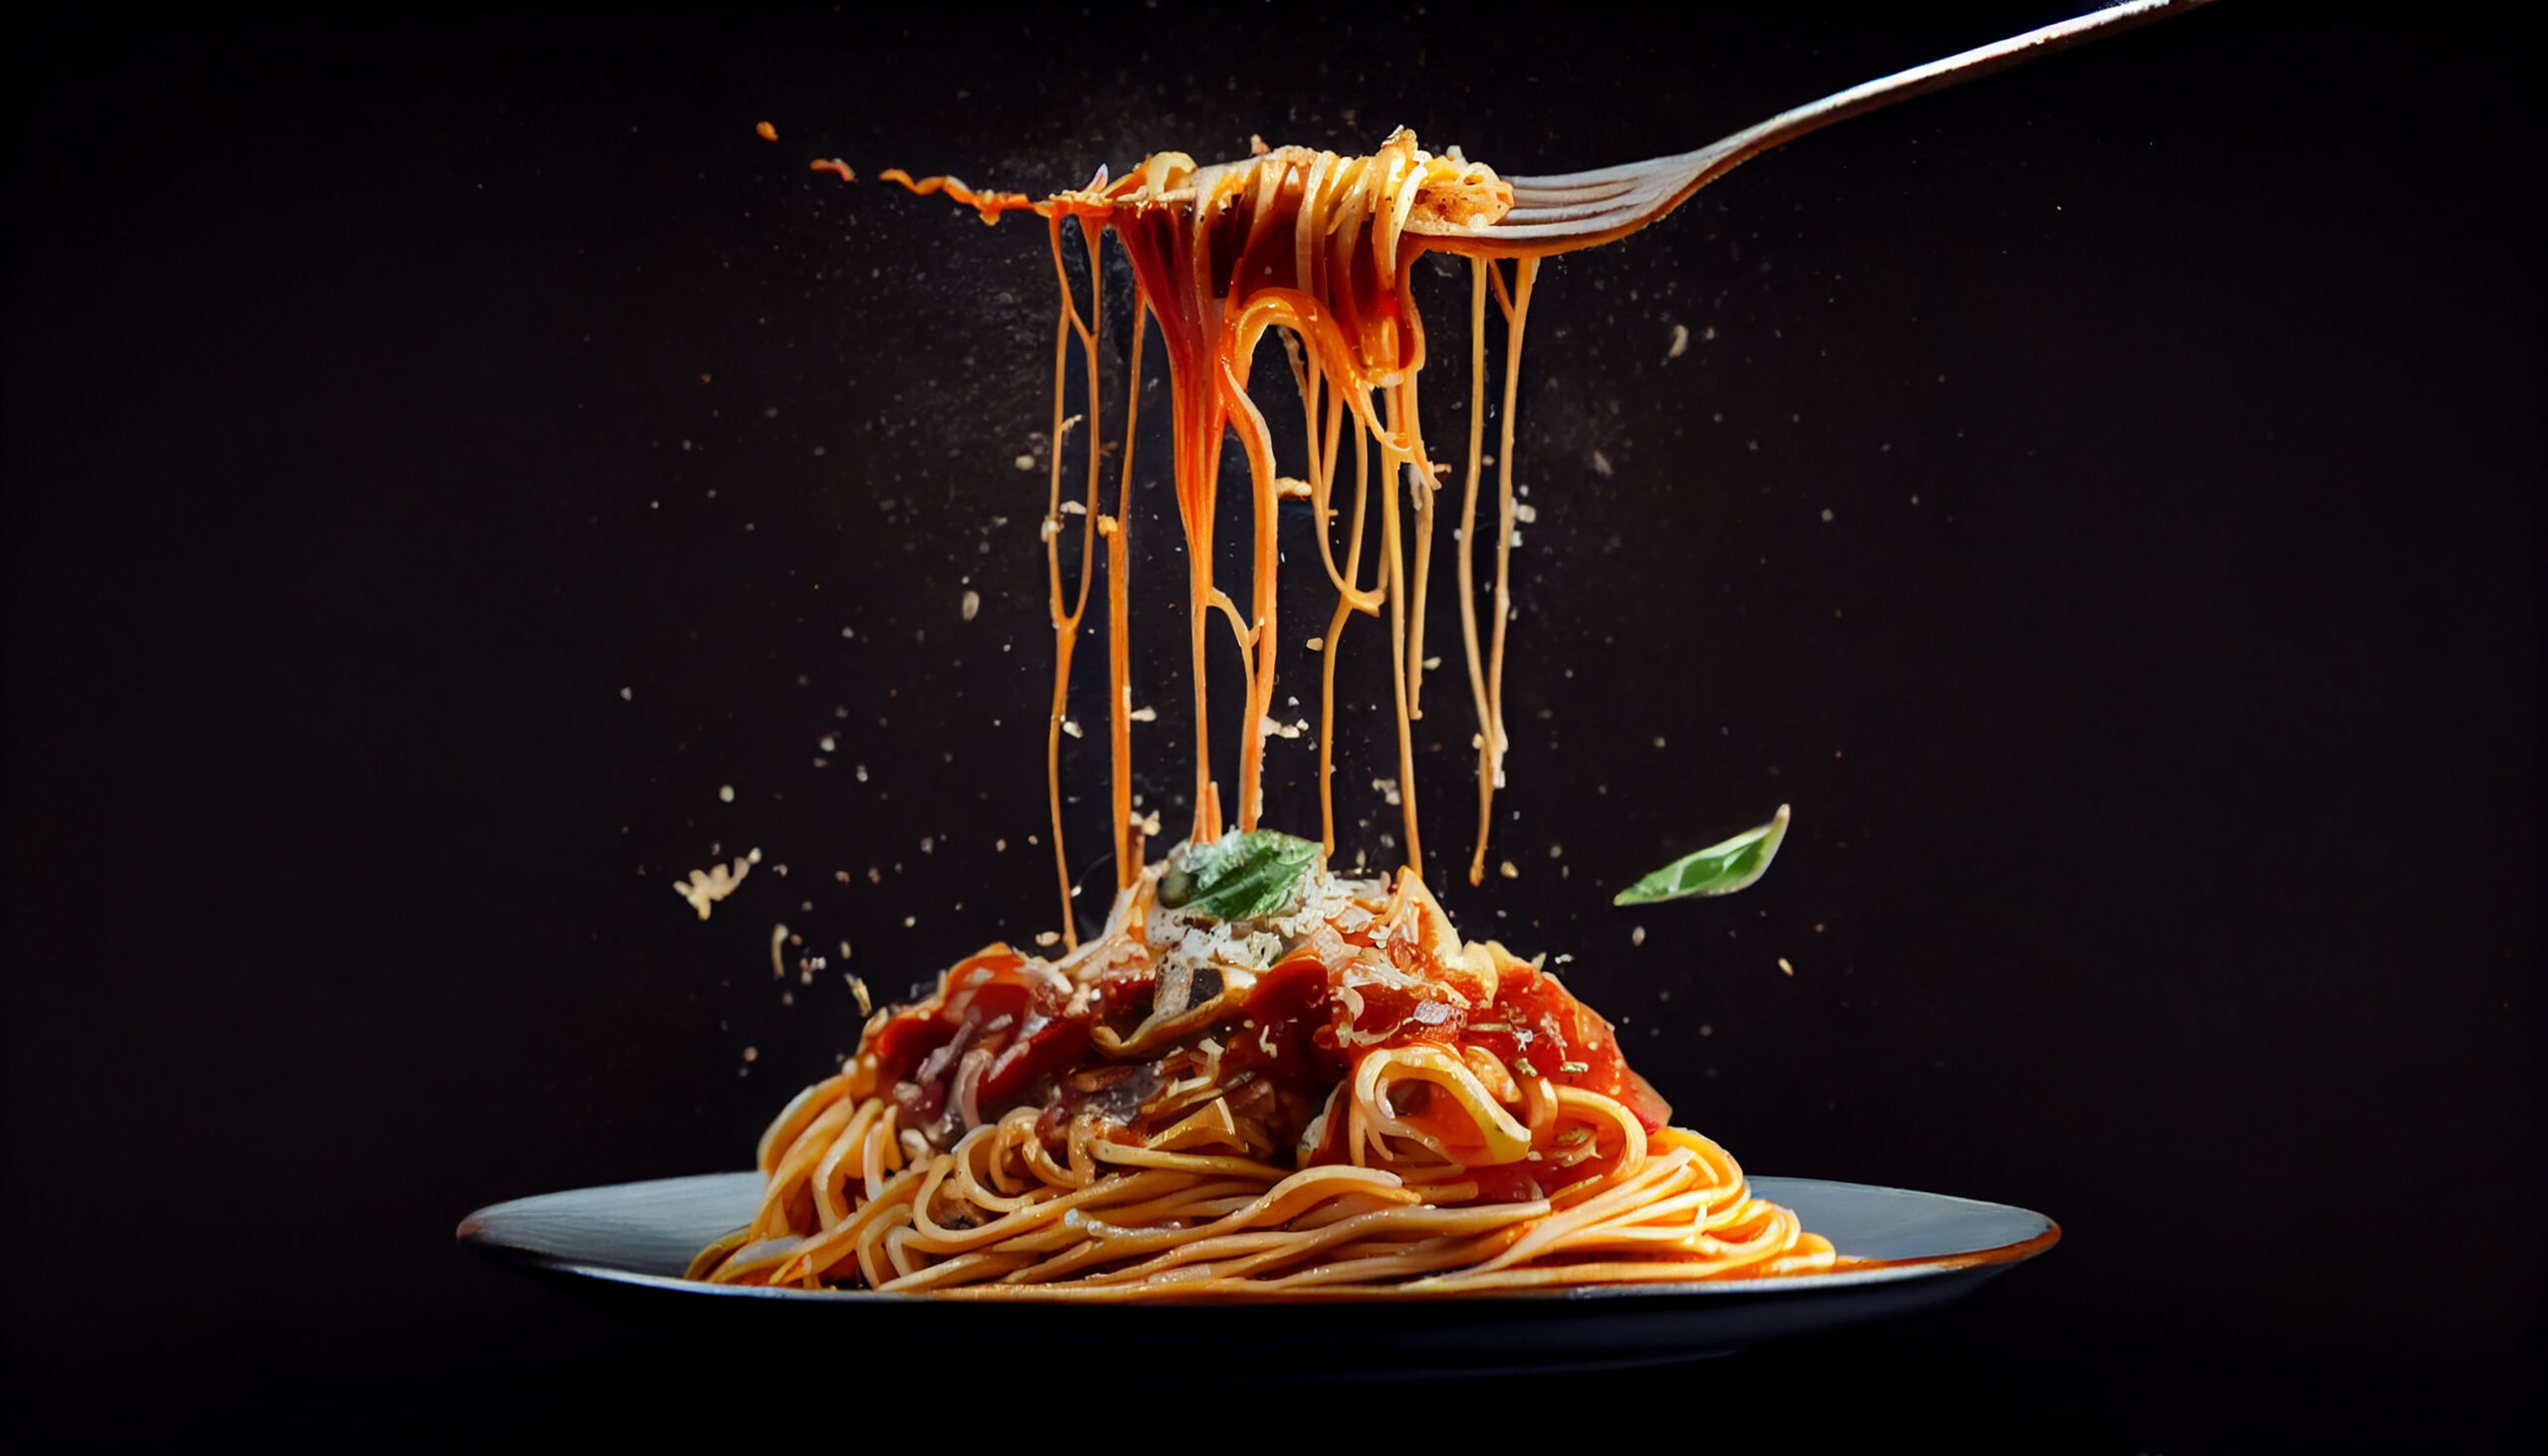 fundo preto, com um prato de comida italiana, composto com uma macarronada ao molho de tomate, com macarrões enrolado em um garfo.